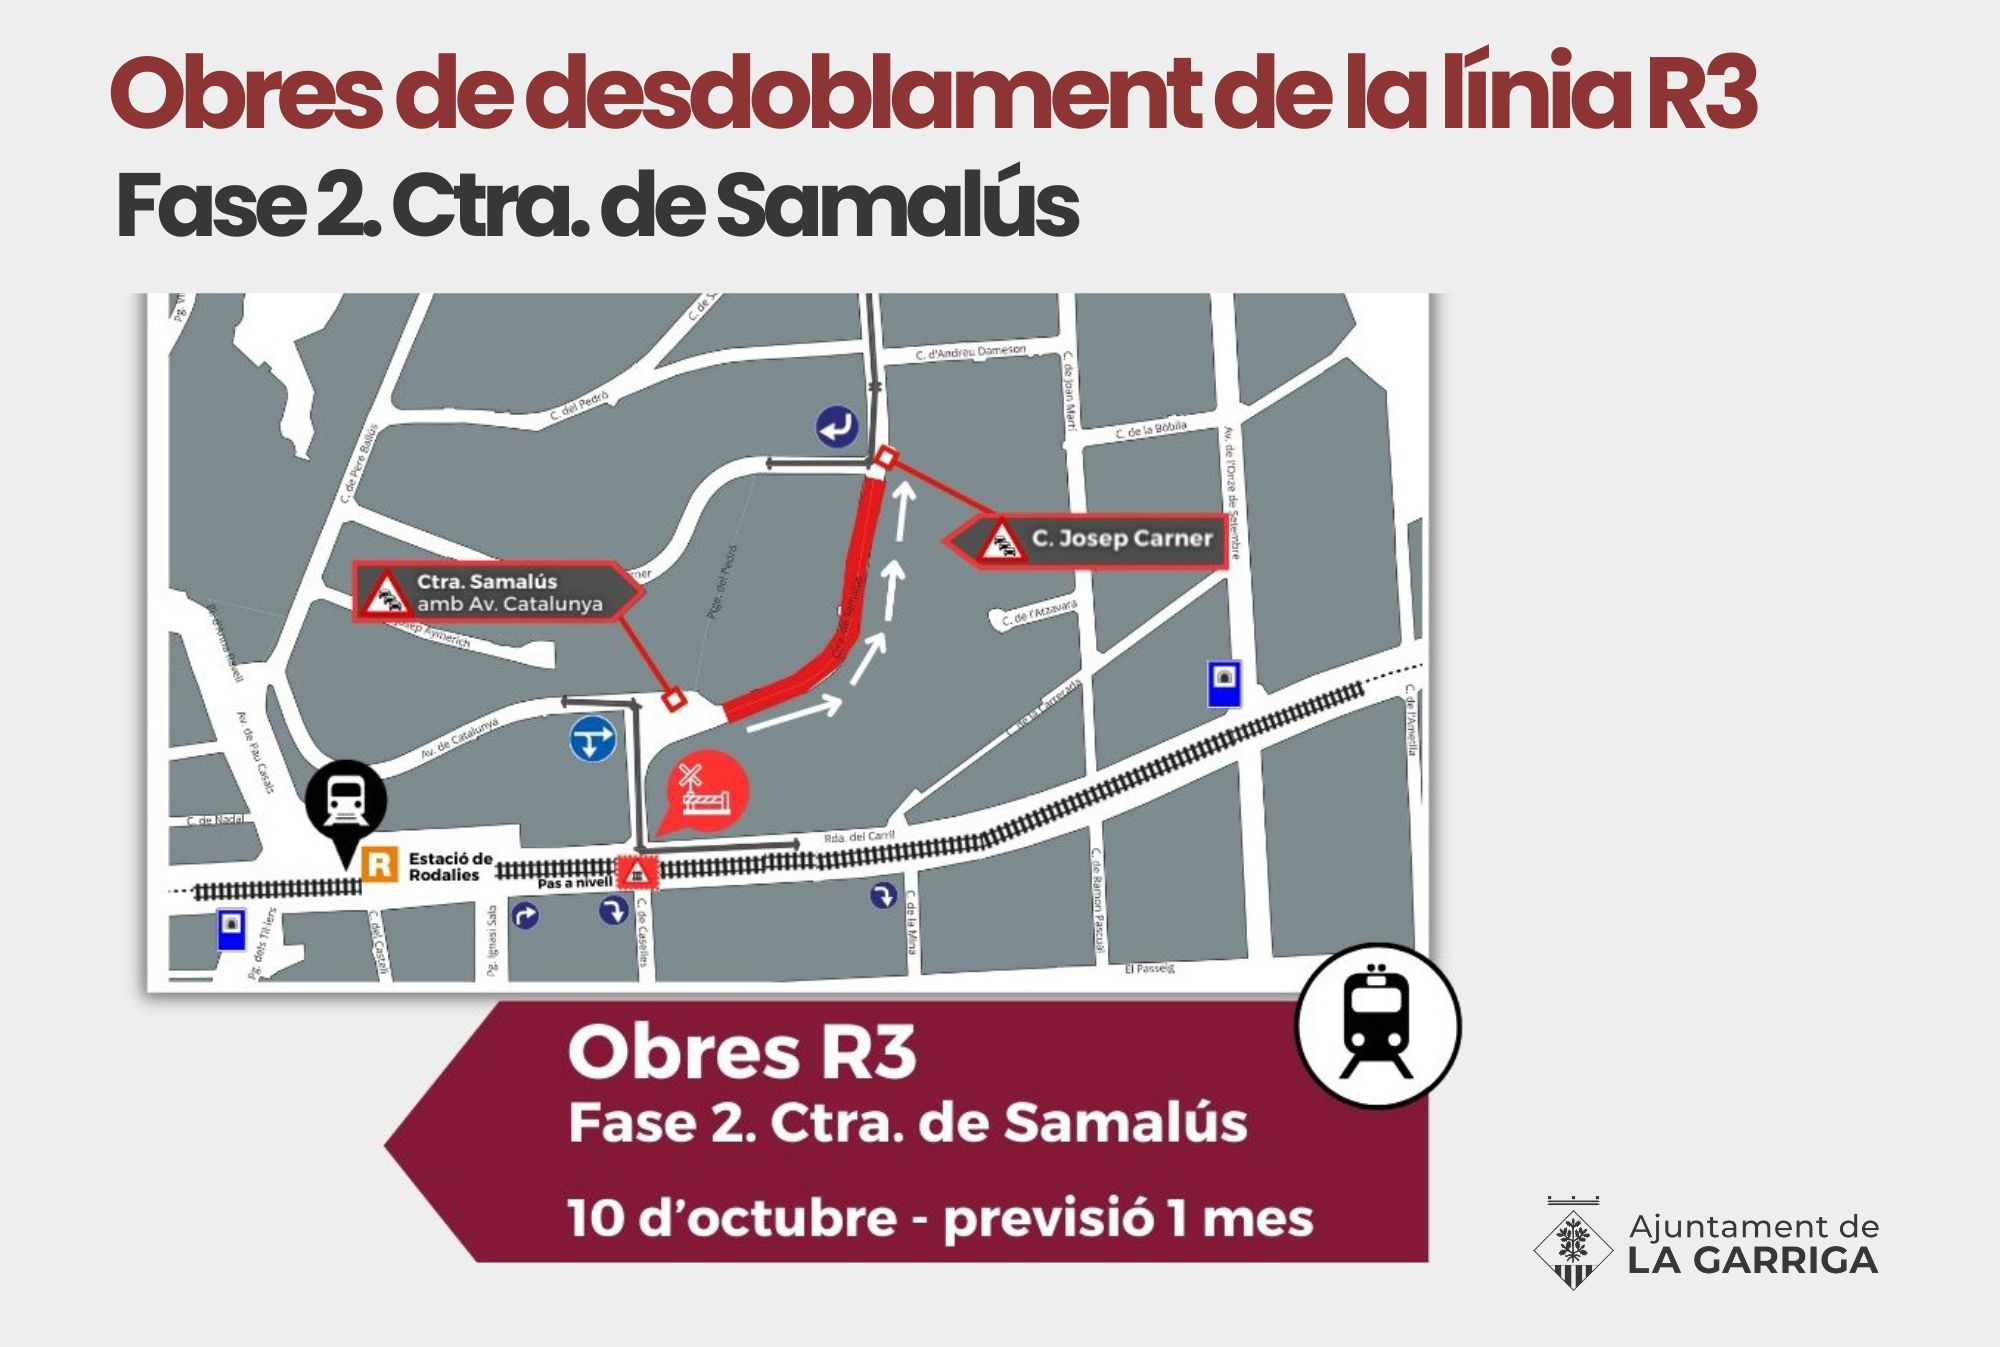 Segona fase d'obres a la Carretera de Samalús la Garriga R3 ADIF